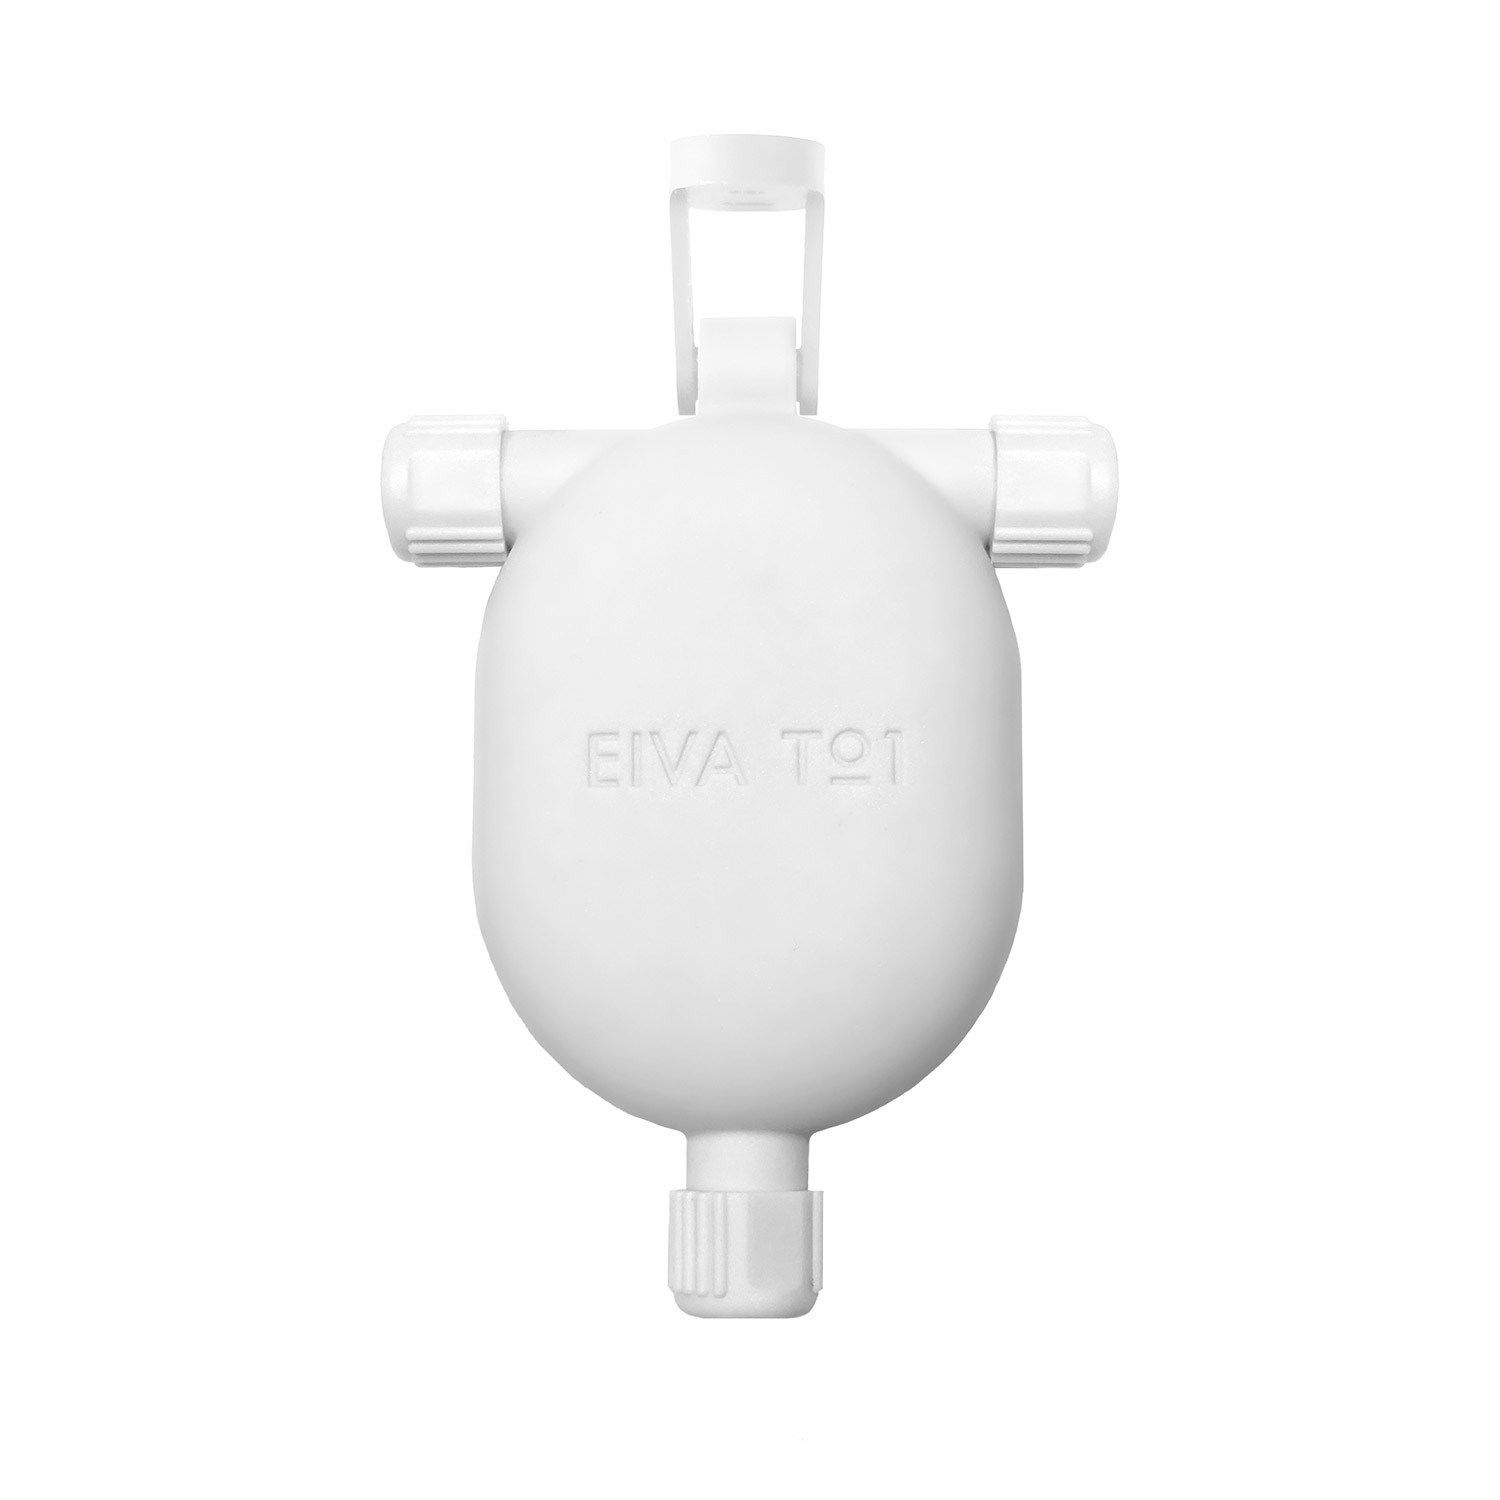 EIVA-3, junta a 3 vías para exterior IP65 a presión